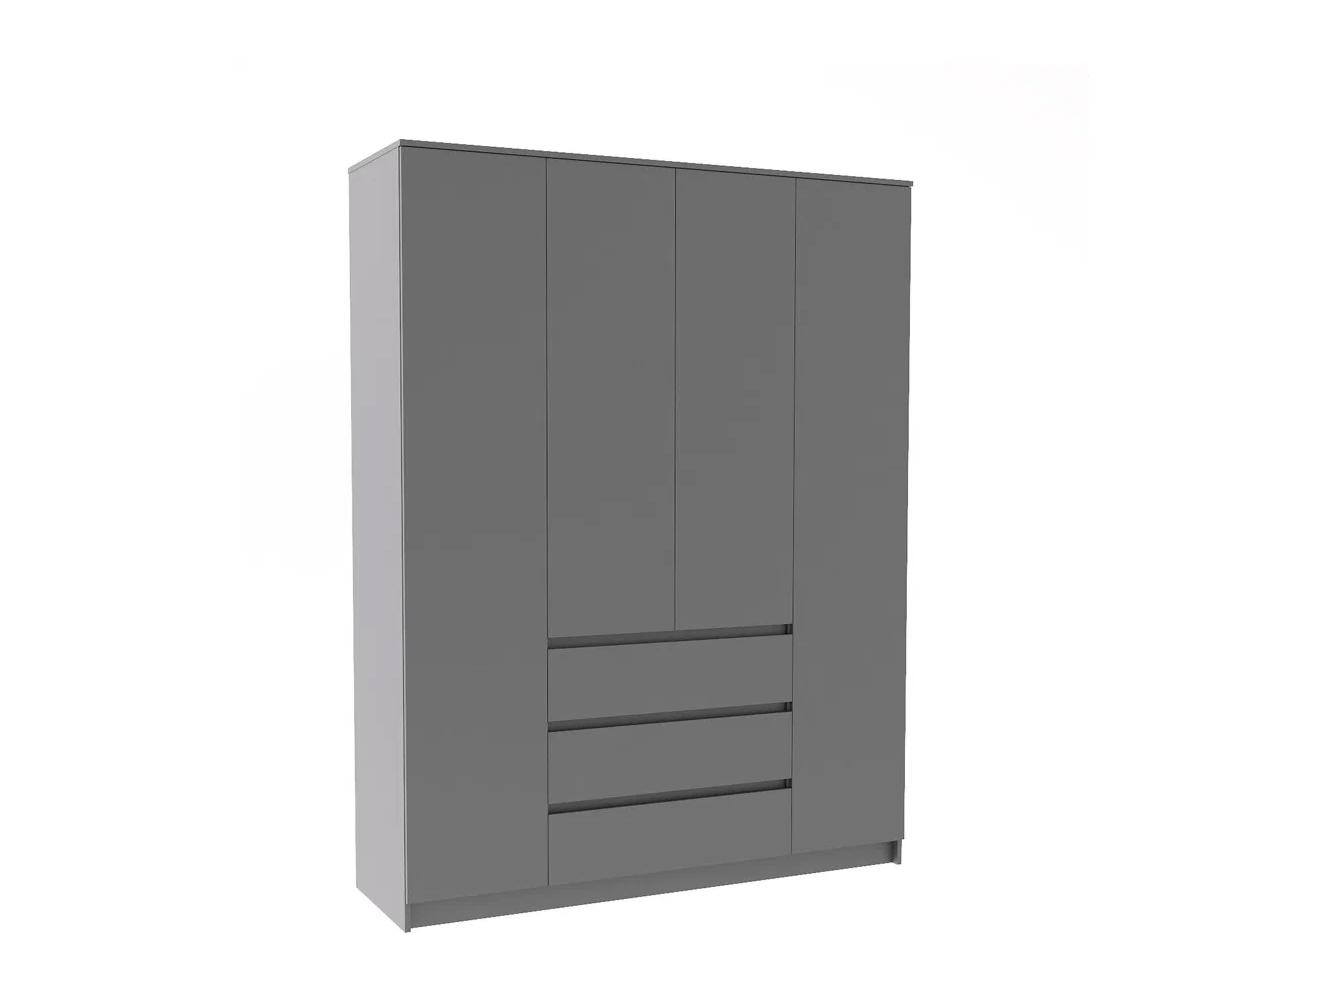 Распашной шкаф Мальм 315 grey ИКЕА (IKEA) изображение товара